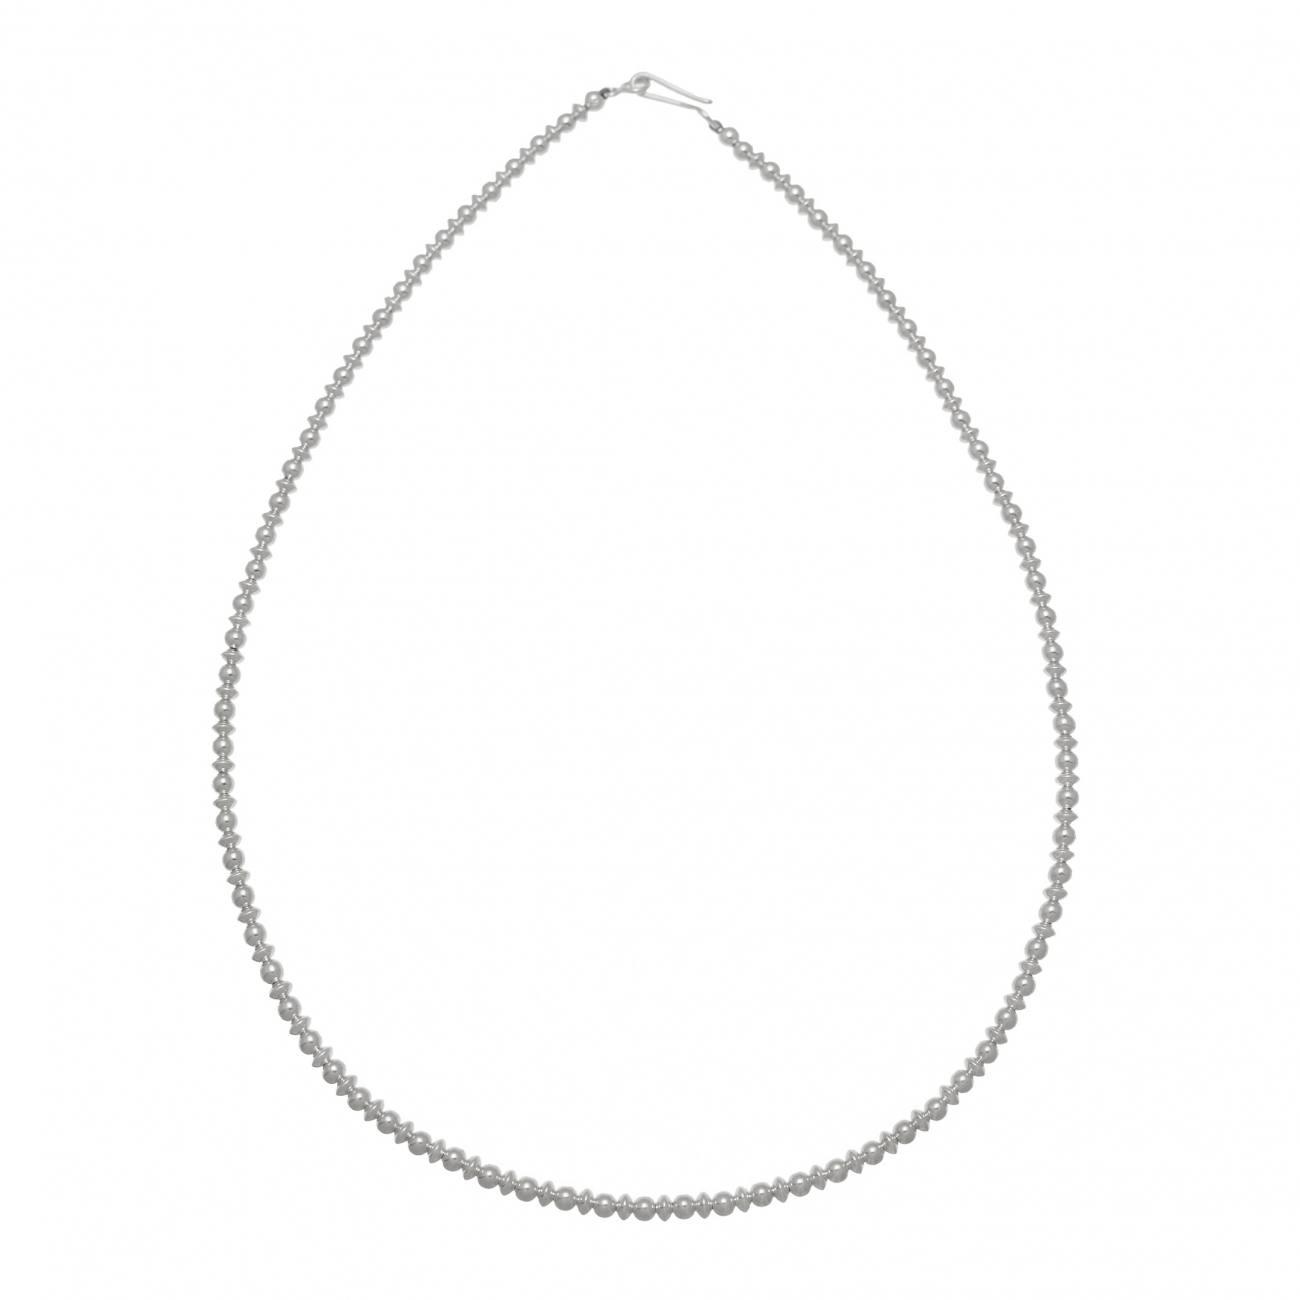 Navajo necklace COw42 in silver beads - Harpo Paris